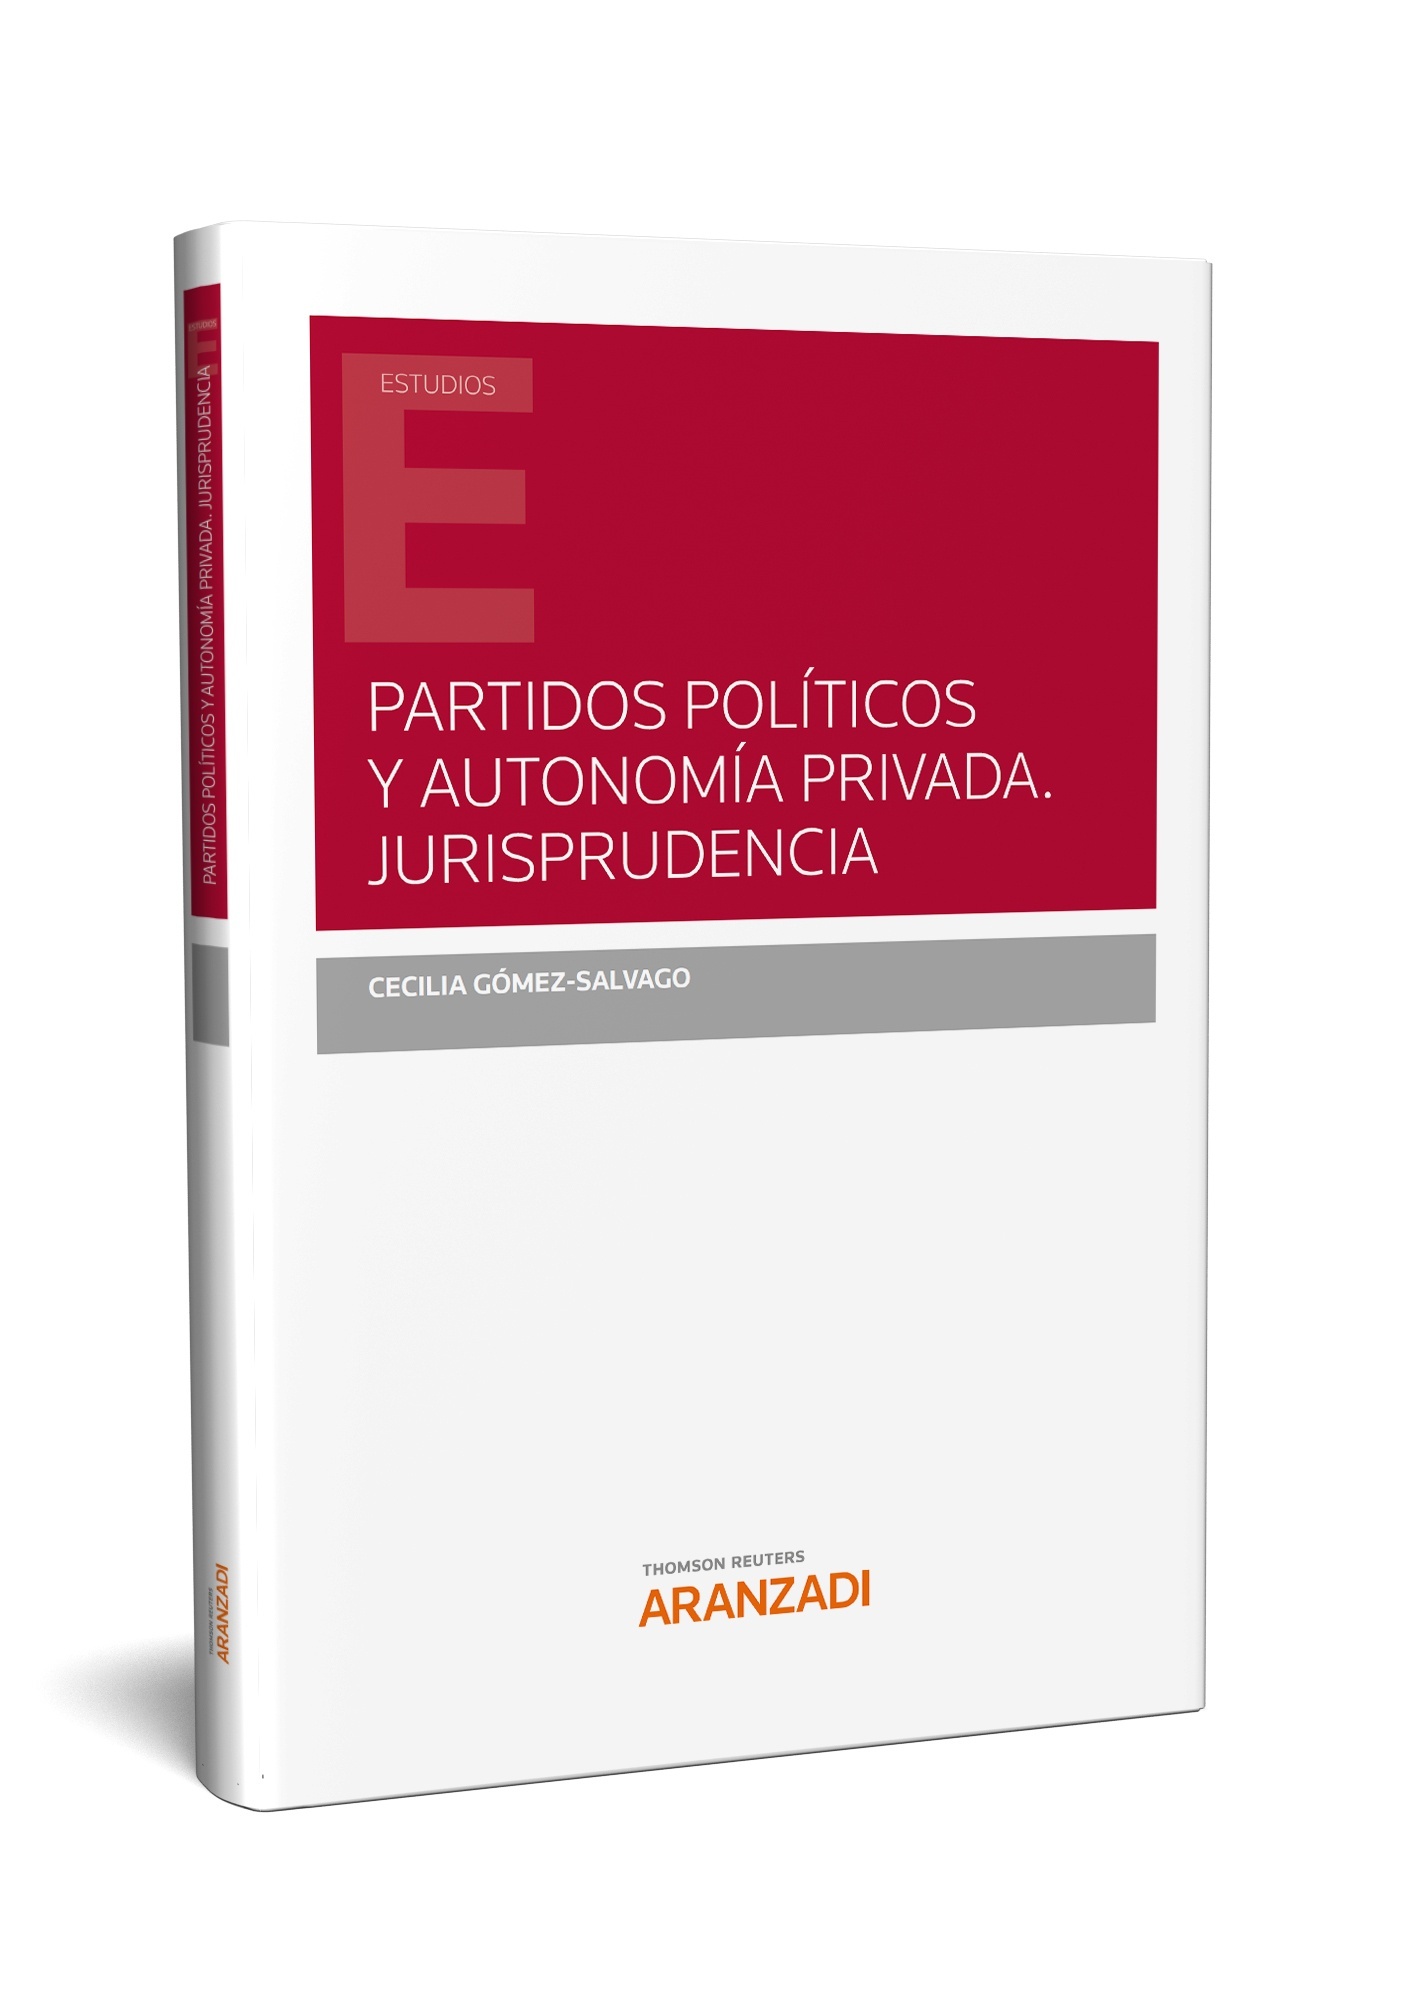 Partidos políticos y autonomía privada. Jurisprudencia